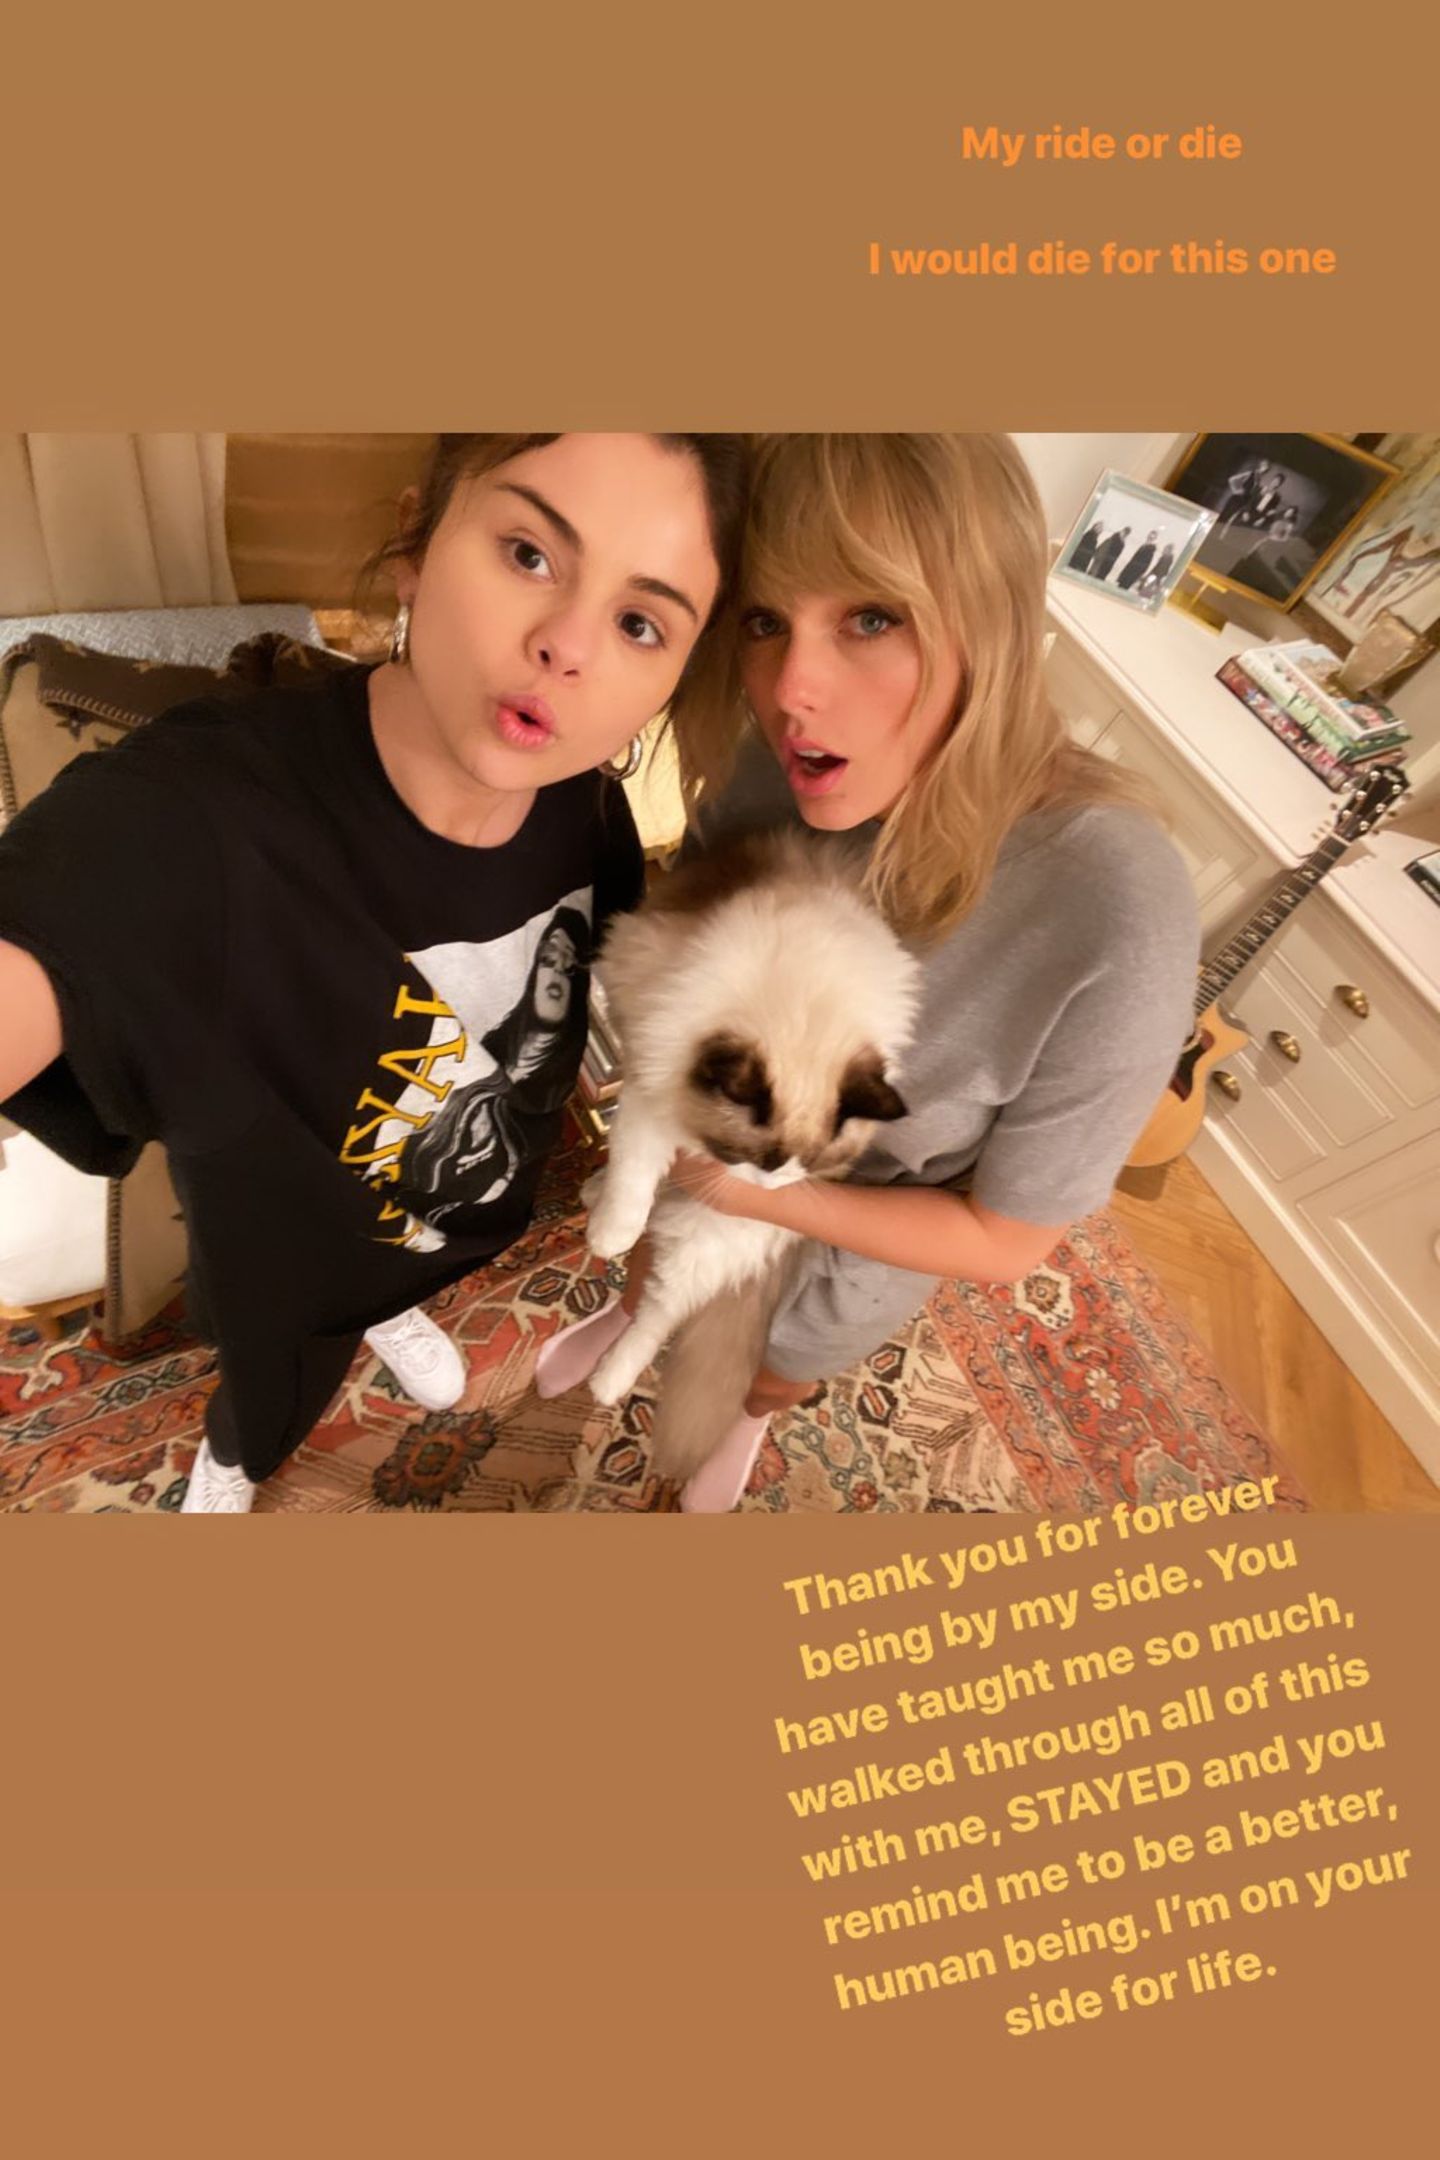 In ihrer Instagram-Story bedankt sich Selena Gomez bei ihrer guten Freundin Taylor Swift für ihre Unterstützung in schweren Zeiten und ist froh darüber, sie immer an ihrer Seite zu wissen. 